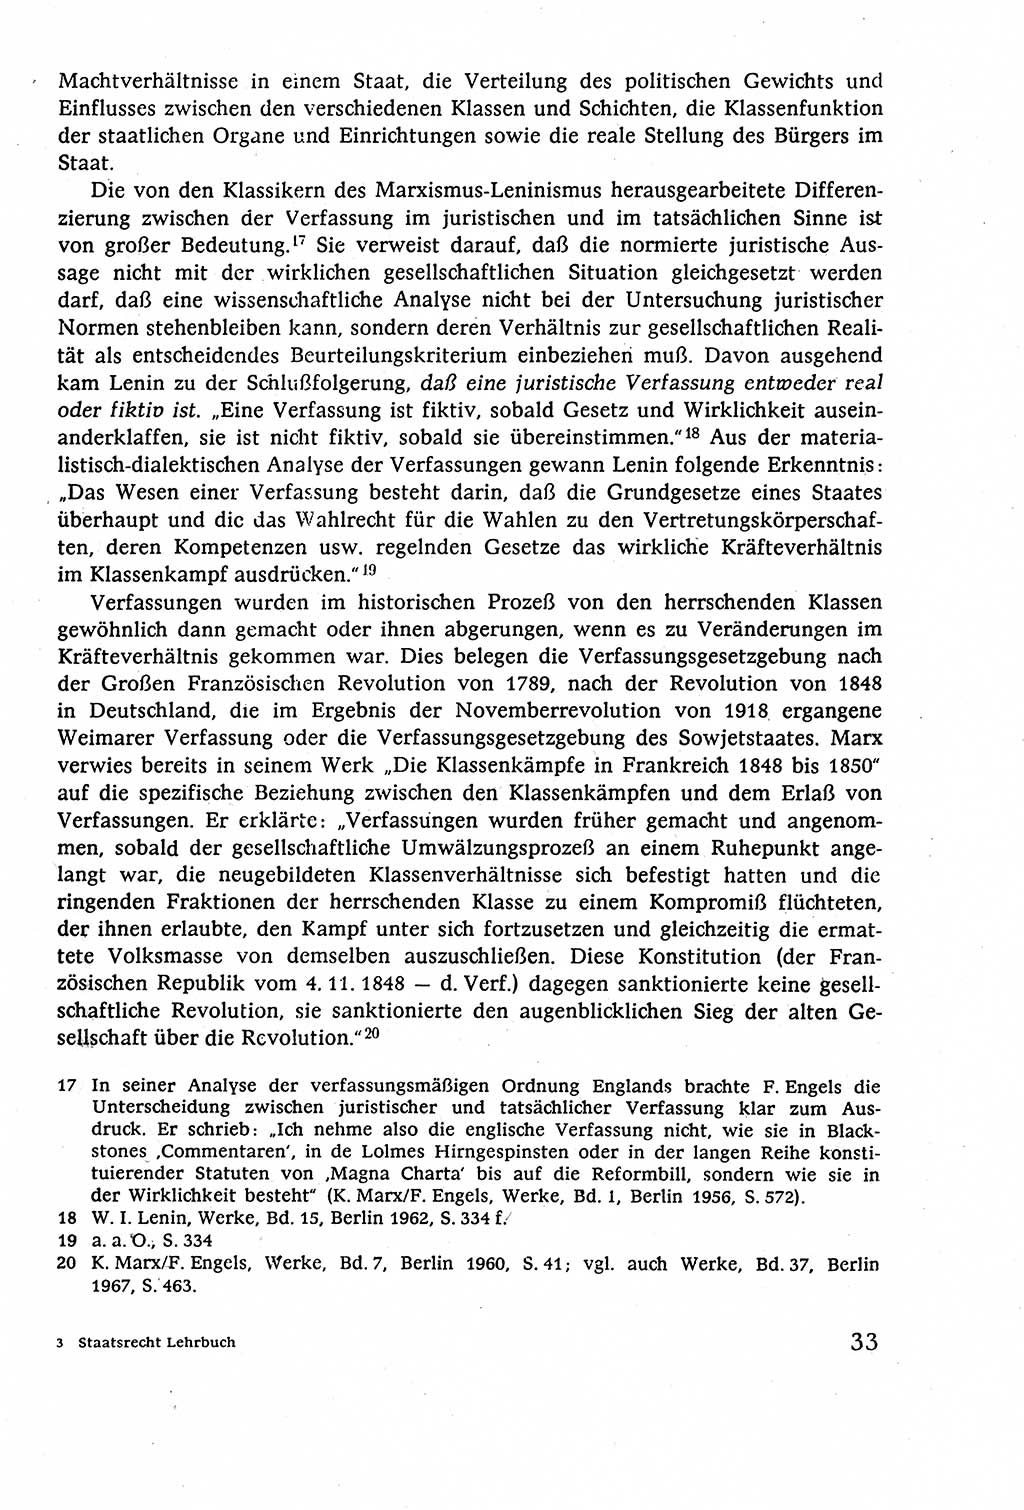 Staatsrecht der DDR (Deutsche Demokratische Republik), Lehrbuch 1977, Seite 33 (St.-R. DDR Lb. 1977, S. 33)